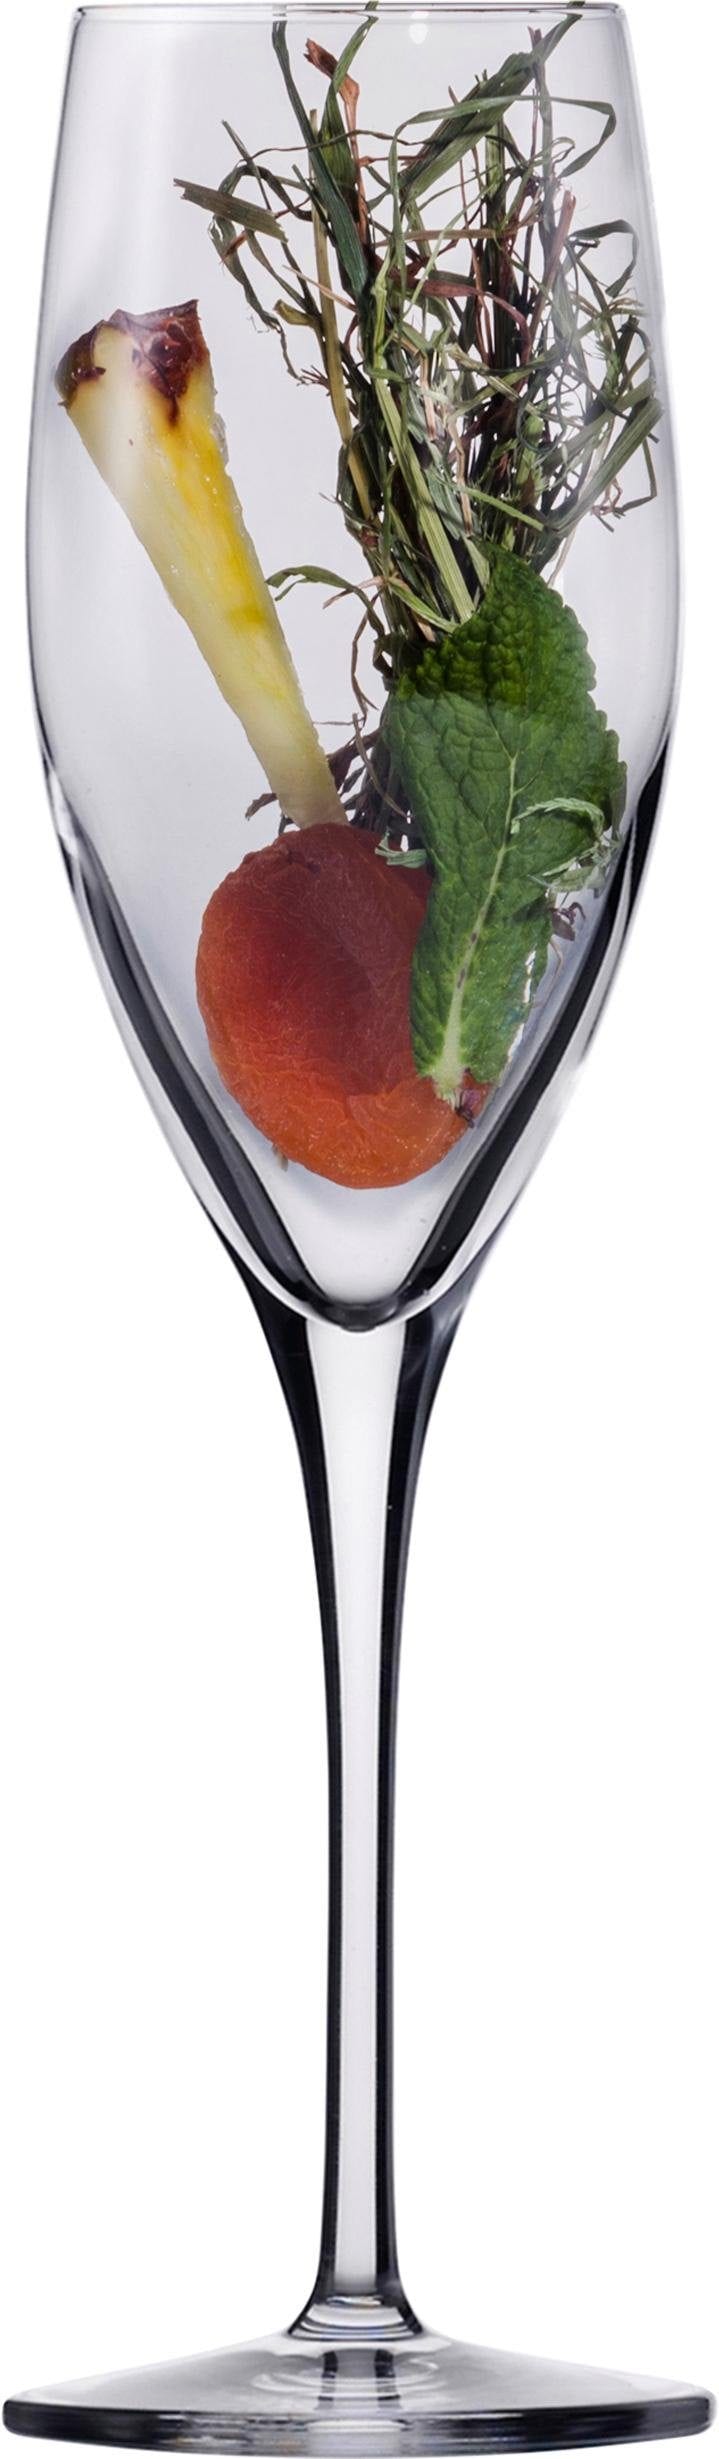 Eisch Champagnerglas »Superior SensisPlus«, (Set, 4 tlg.), bleifrei, 278 ml, 4-teilig